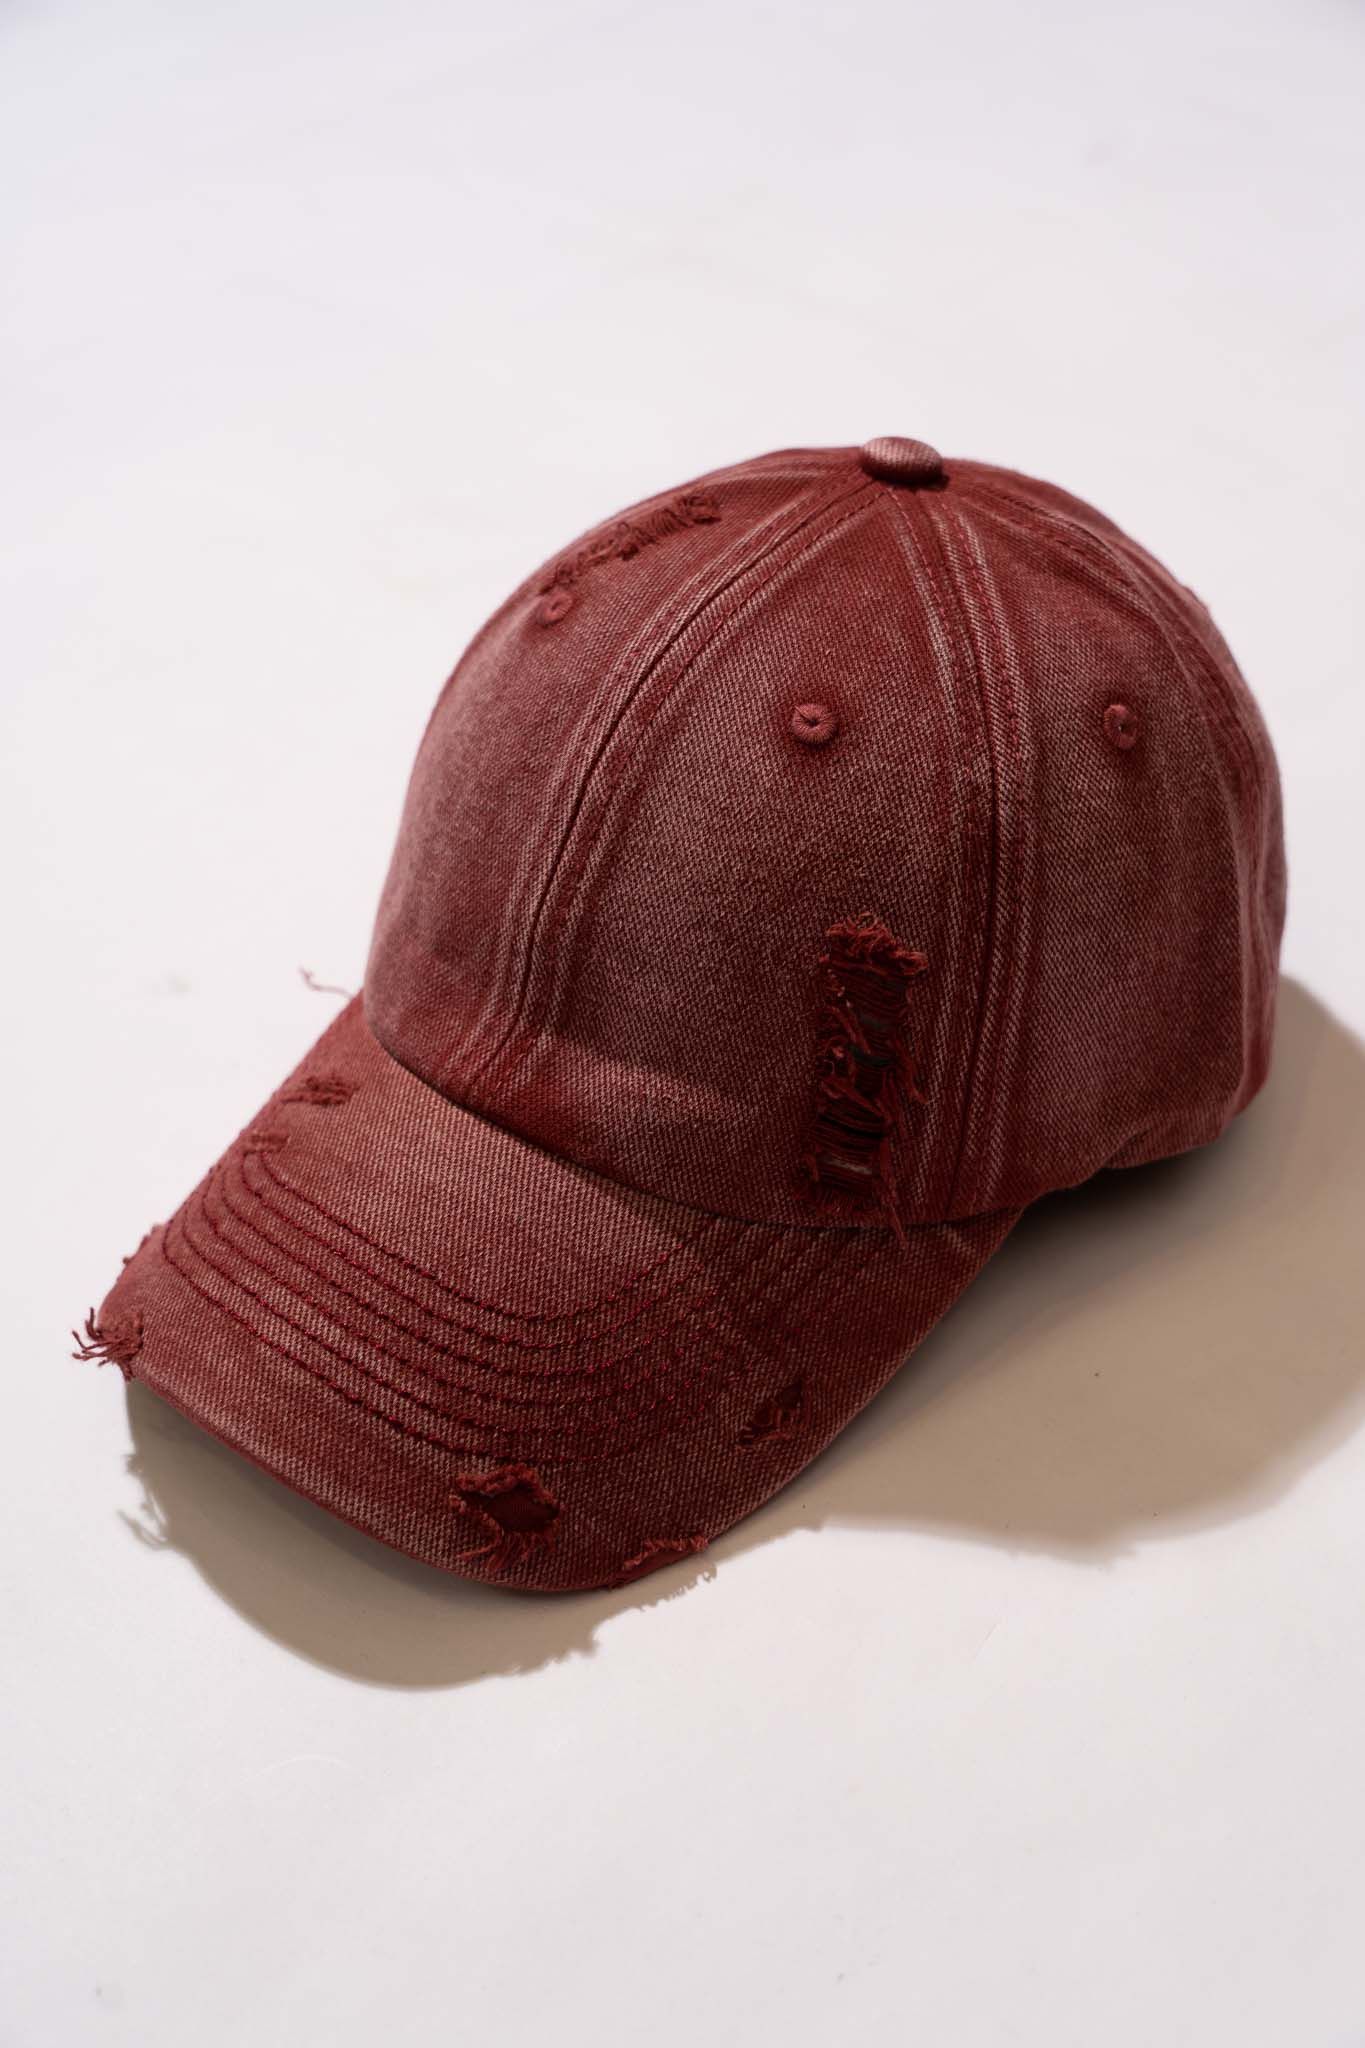  Red Cap 02 